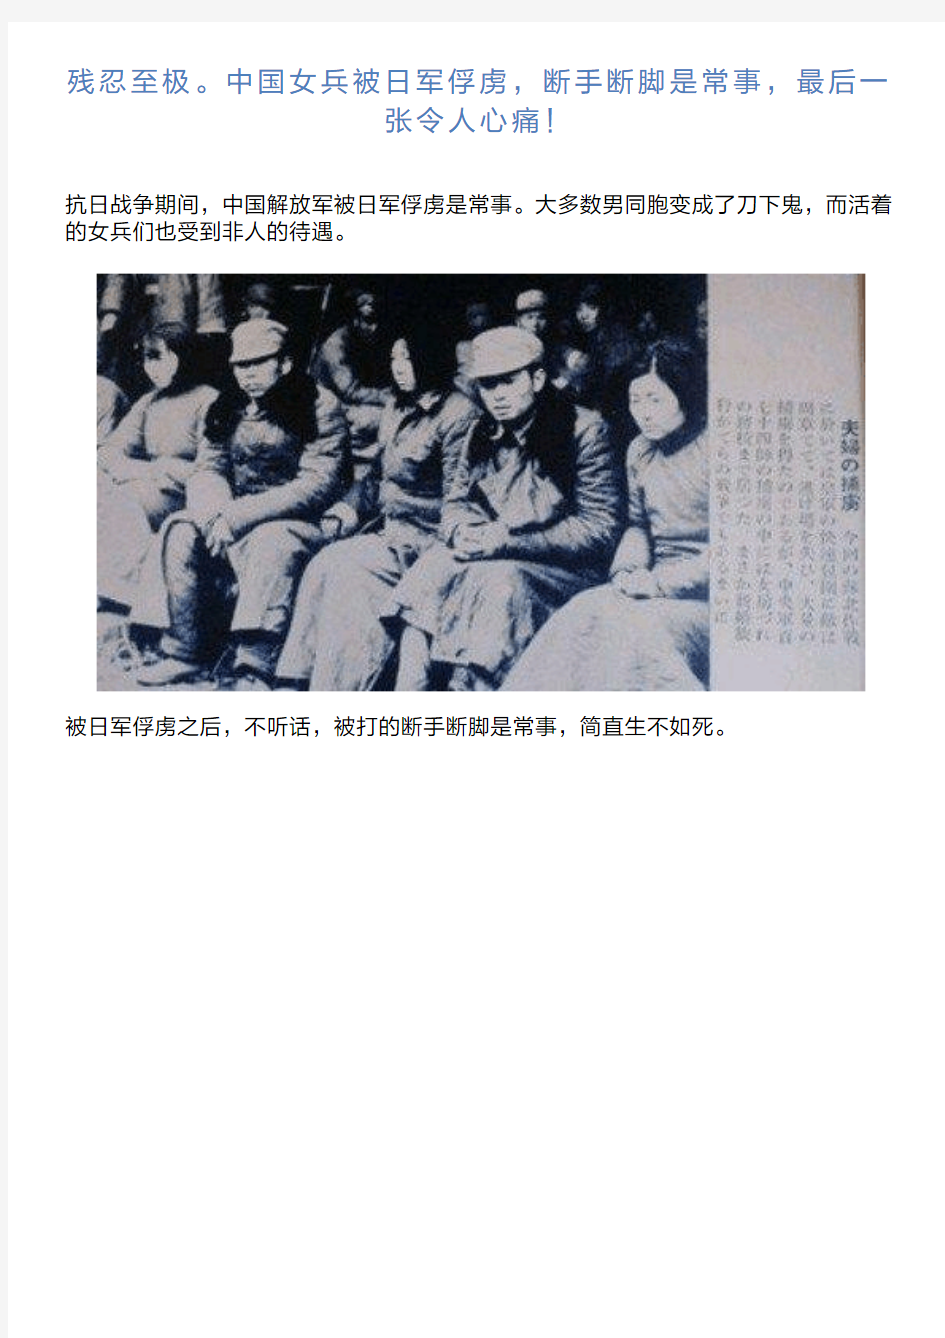 残忍至极。中国女兵被日军俘虏,断手断脚是常事,最后一张令人心痛!讲解